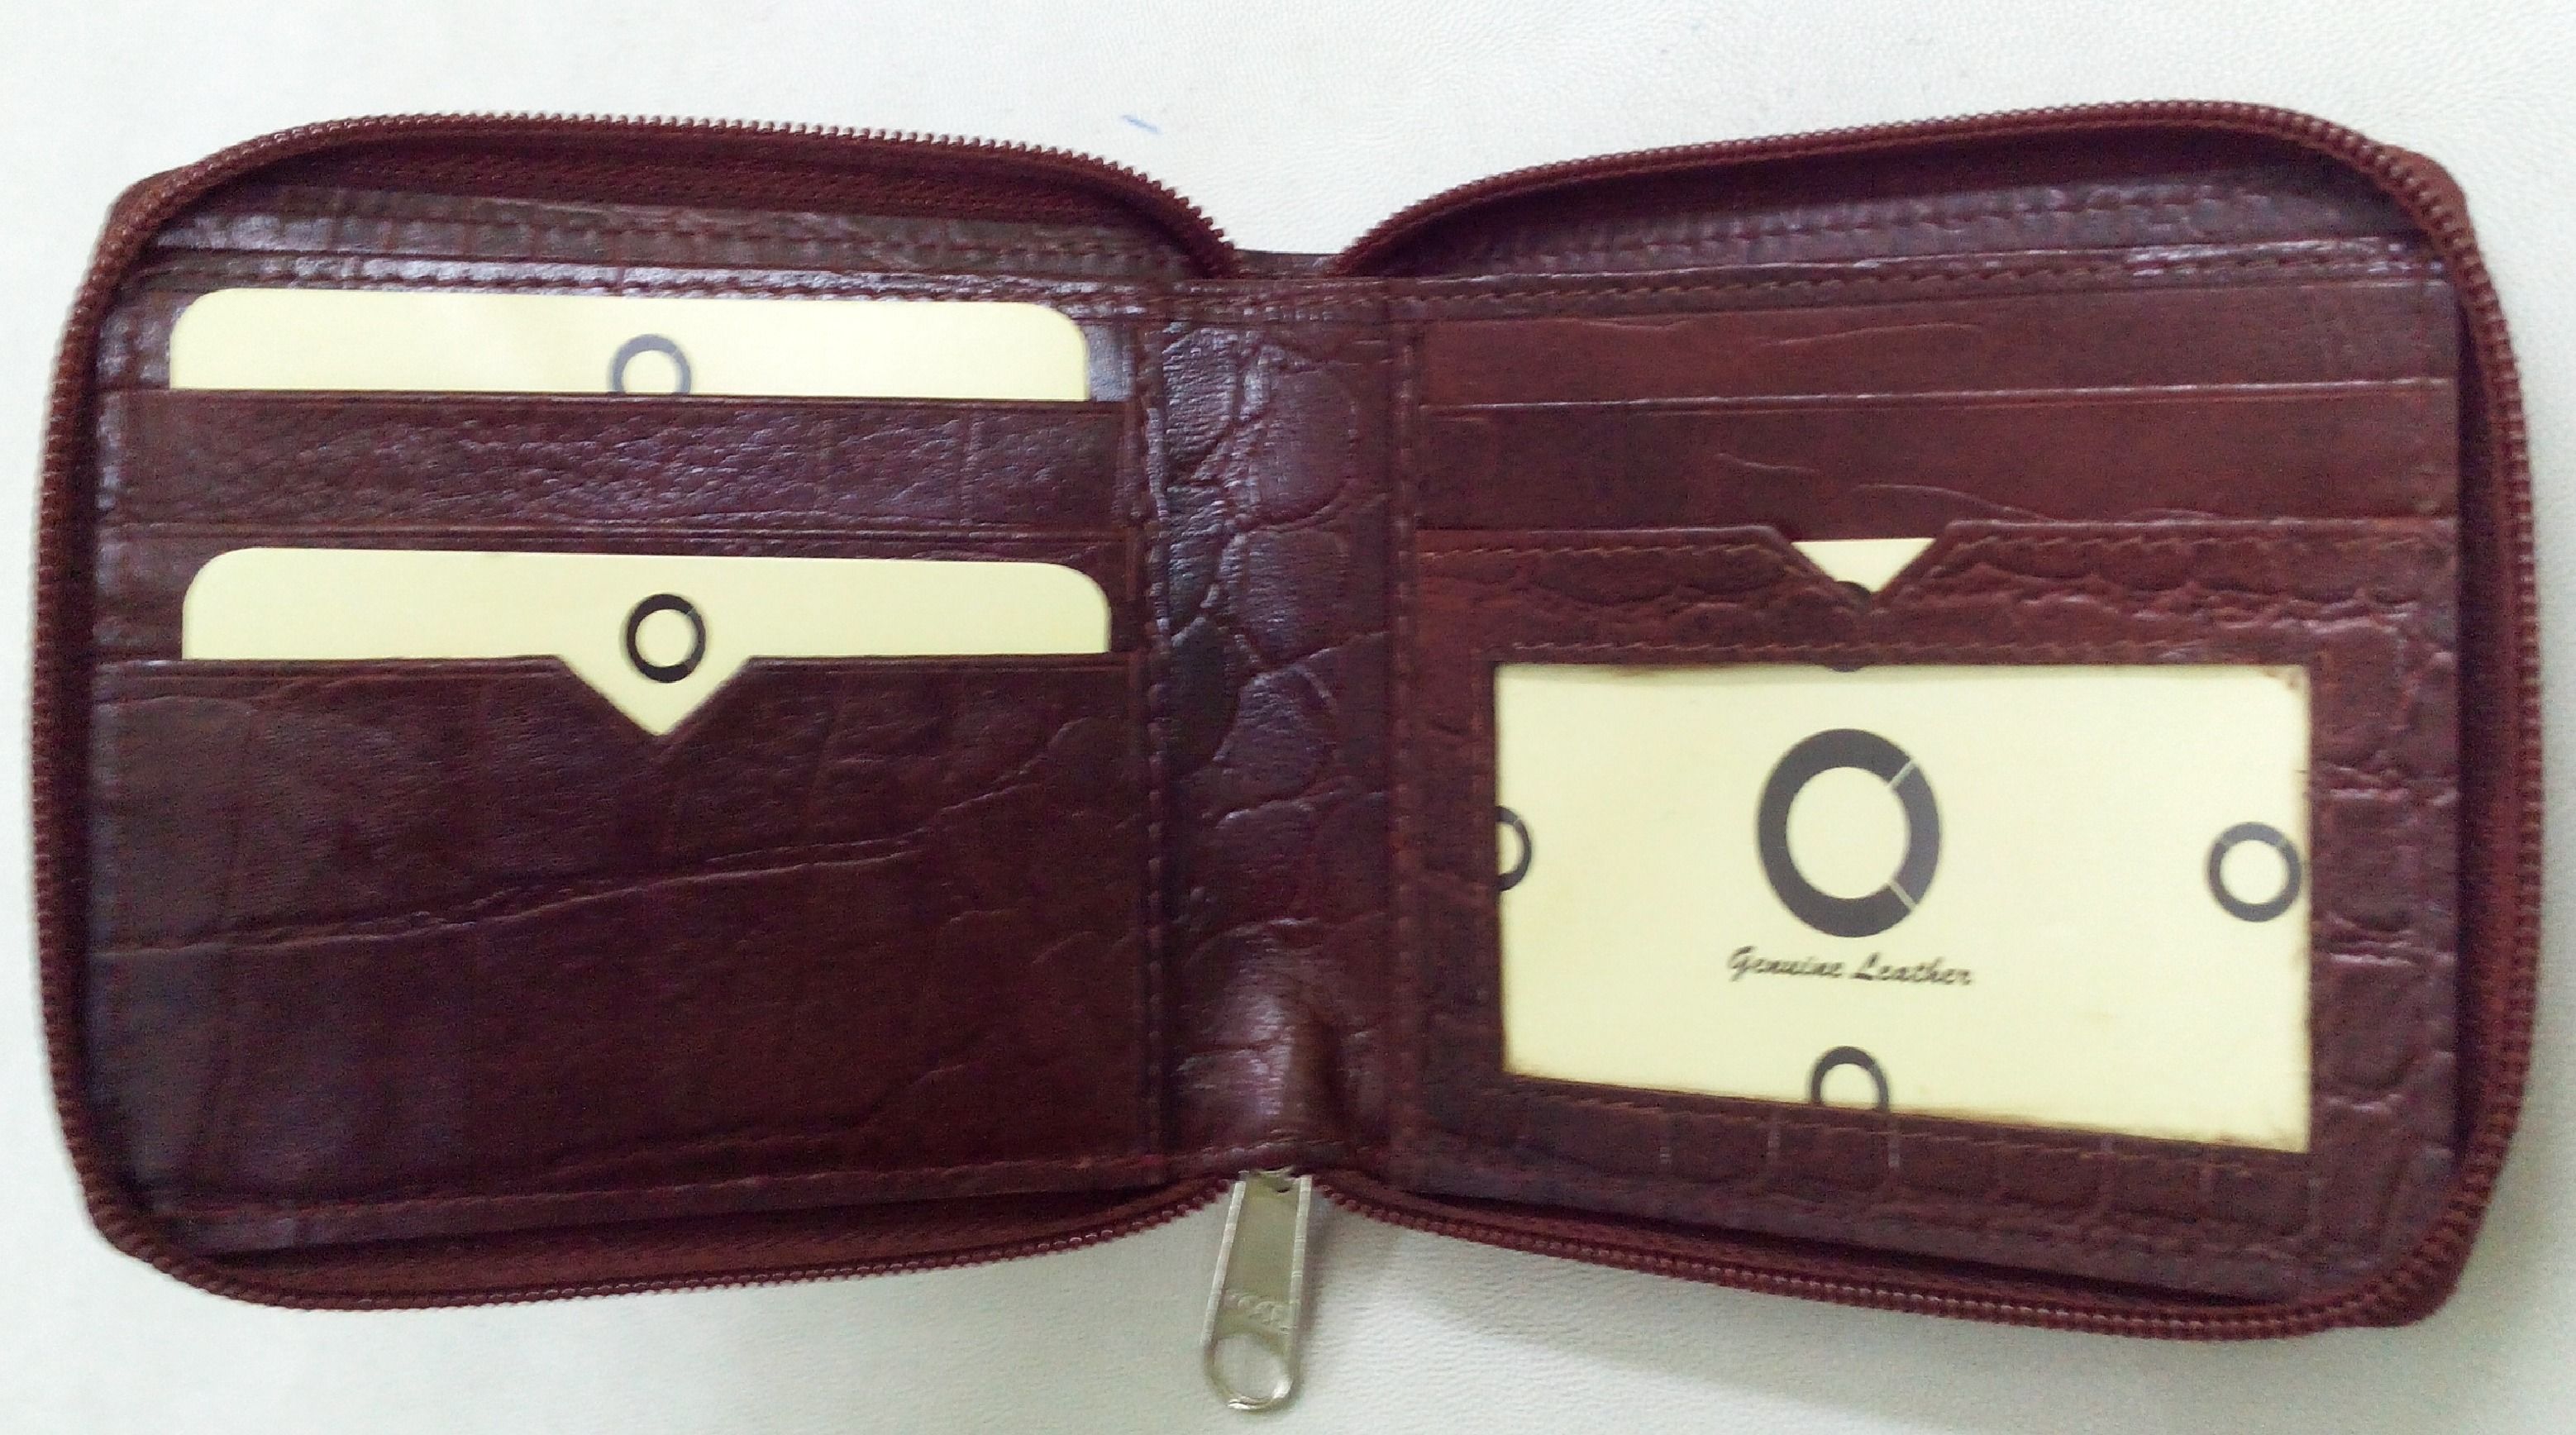 Men Leather Wallet - Men Black Leather Wallet Manufacturer from Kolkata